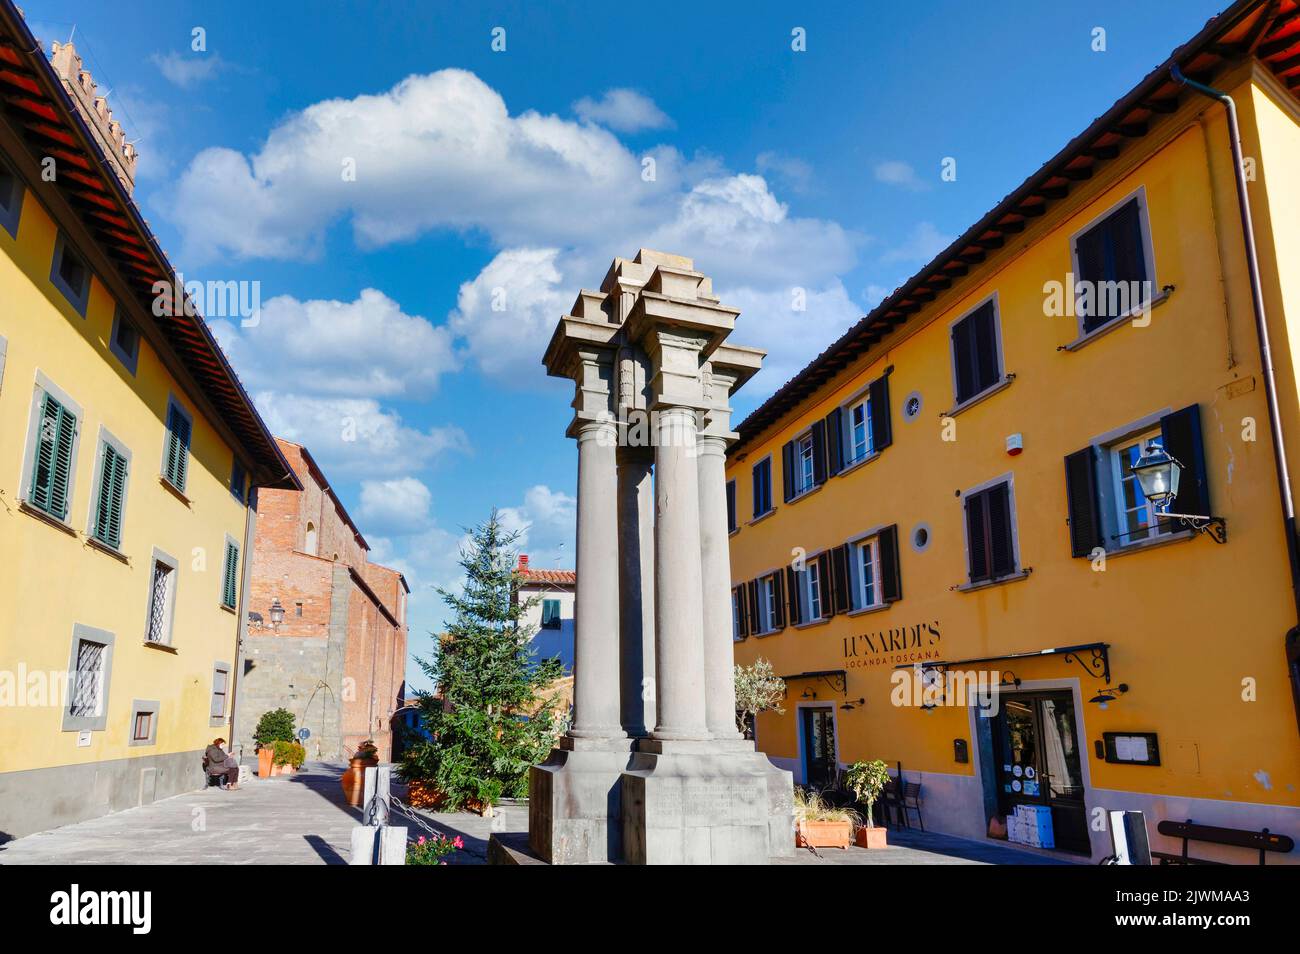 El monumento conmemorativo de la guerra en la plaza de la Piazza Carrara en el centro de Montecarlo, Lucca, Italia, bajo un hermoso cielo Foto de stock